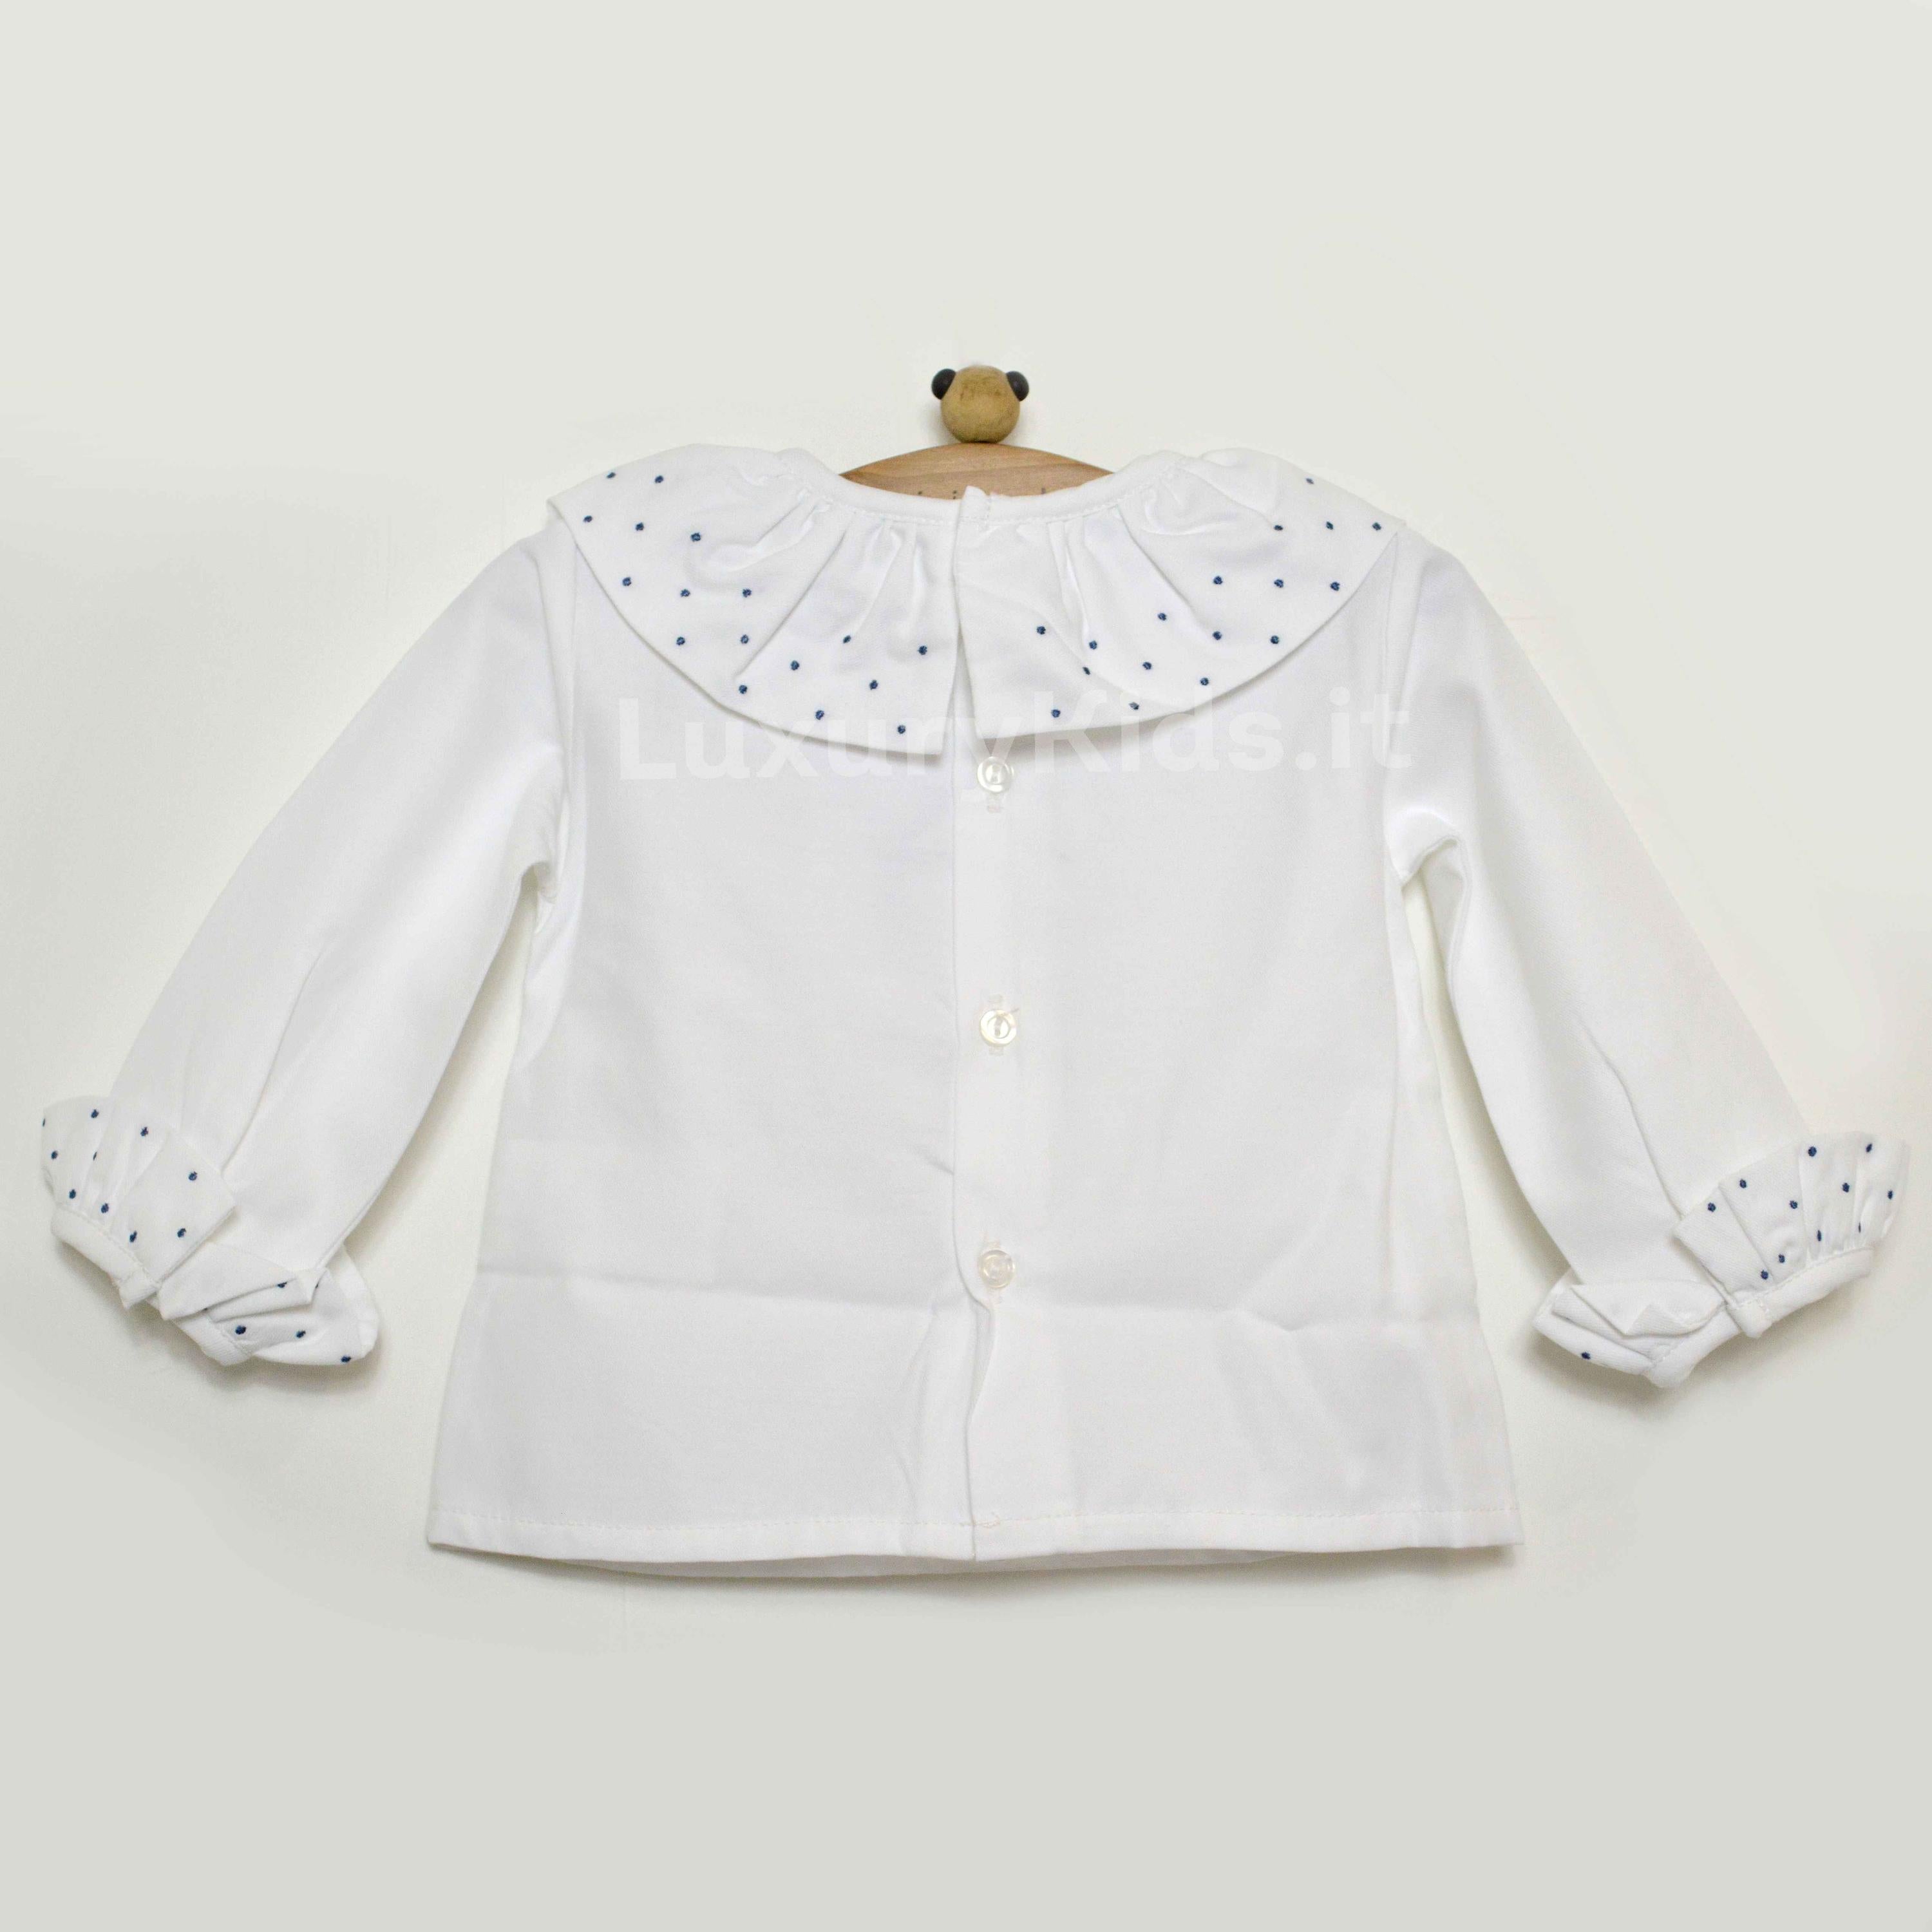 Camicia in Caldo Cotone Manica Lunga con Colletto Rouches Bianco-Blu Neonata A&J 273BL - A&J - LuxuryKids